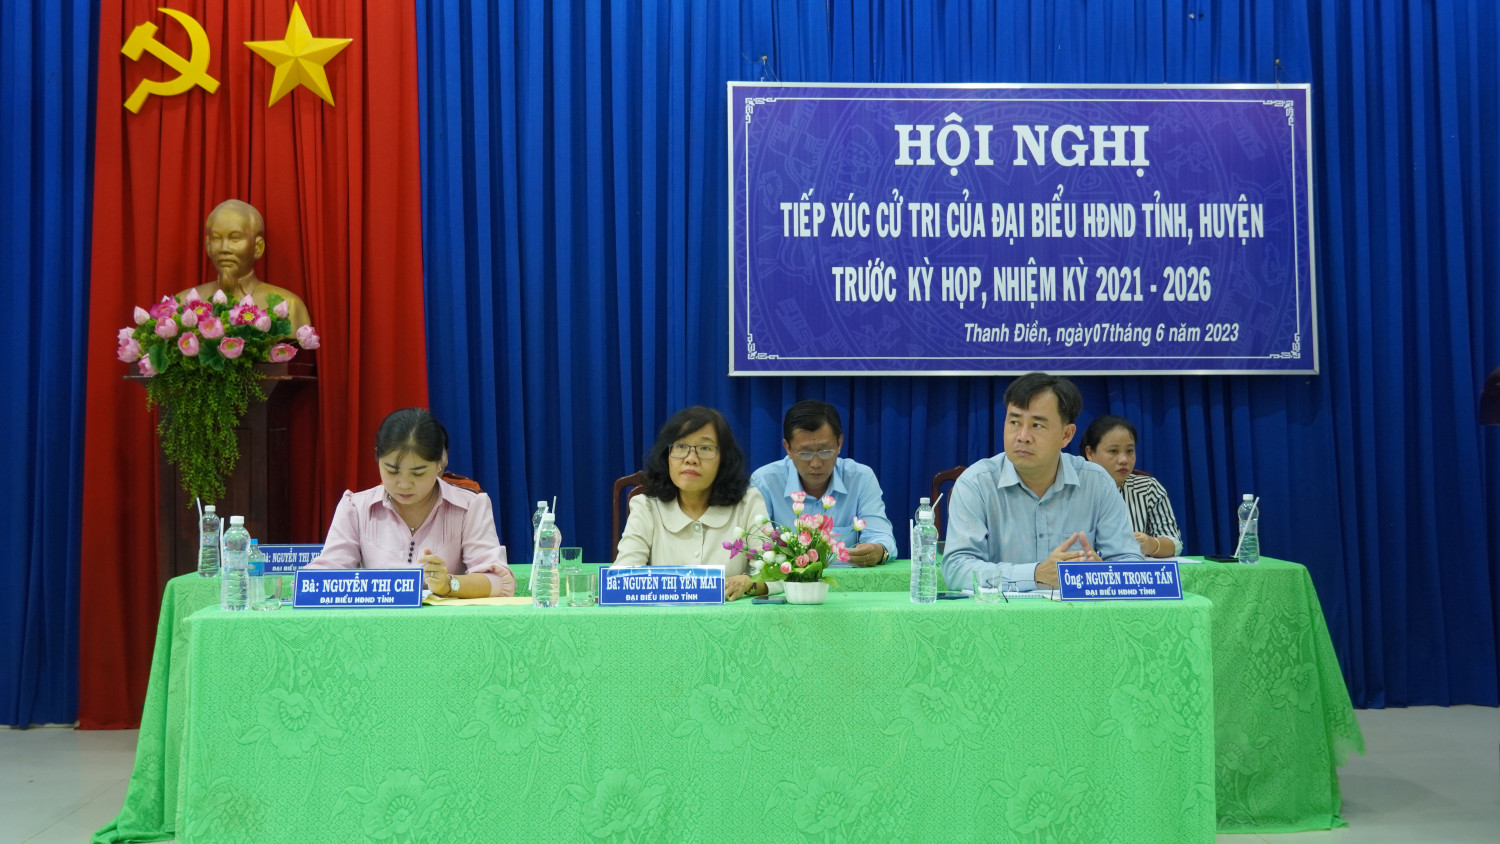 HĐND tỉnh và huyện: Tiếp xúc cử tri 2 xã Thanh Điền và An Bình